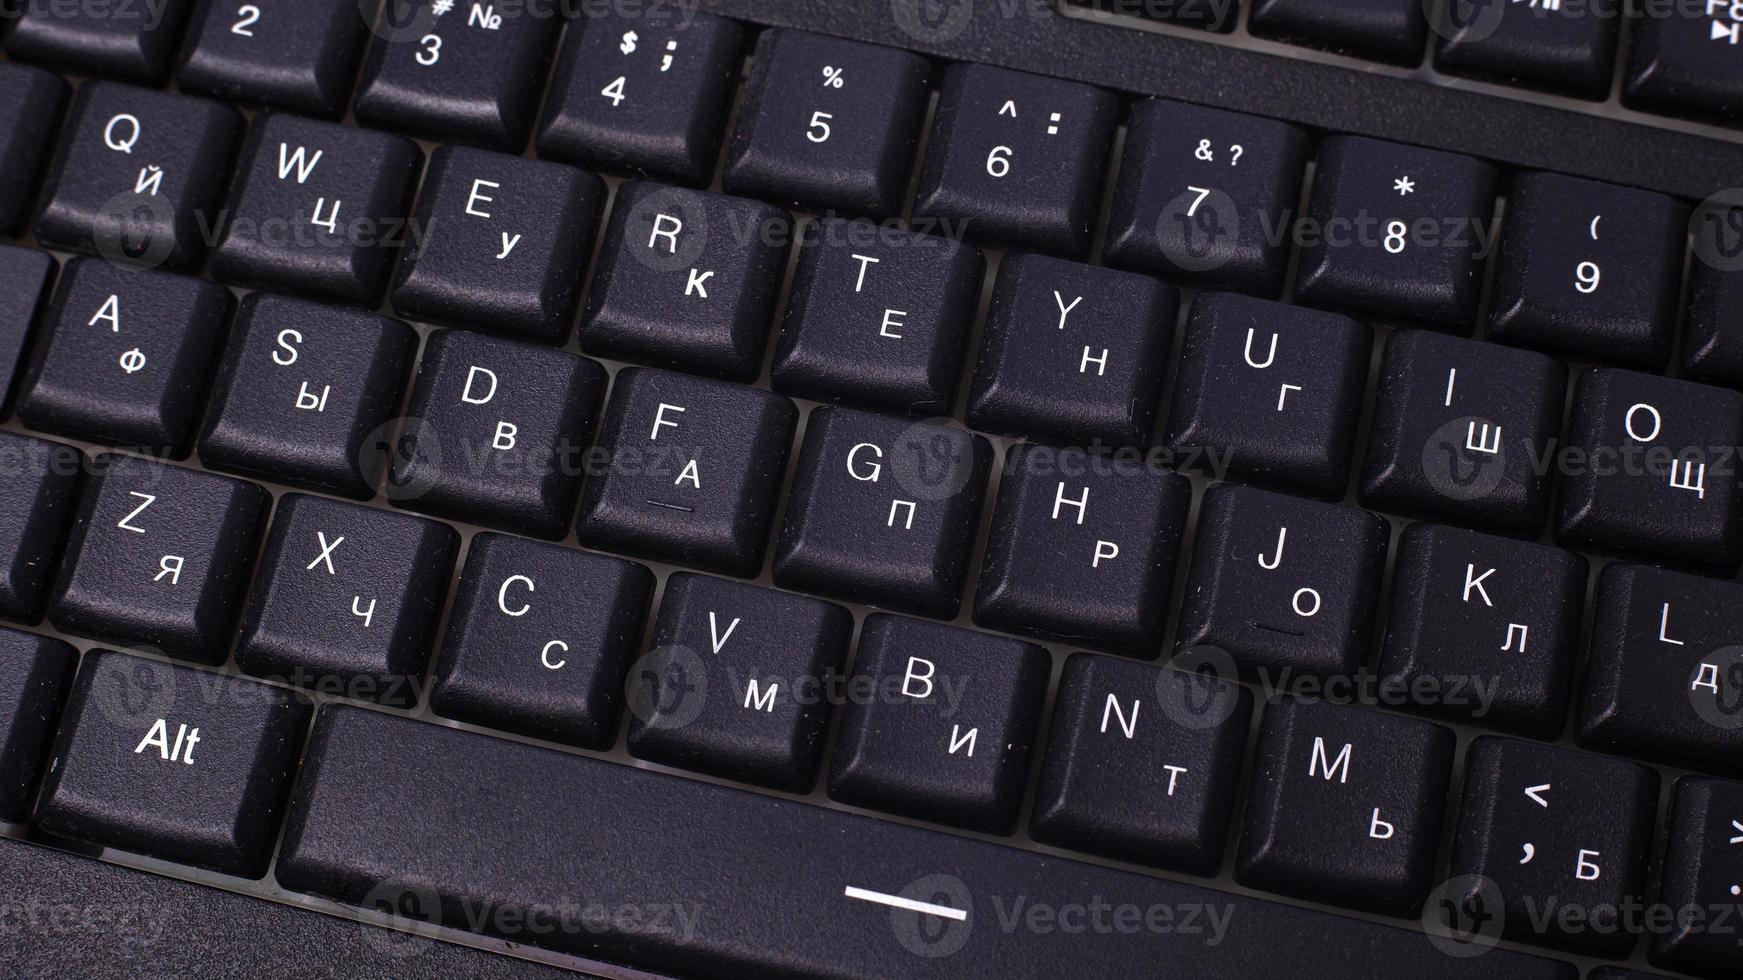 teclado de computadora negro. dispositivo para enviar mensajes en una computadora foto